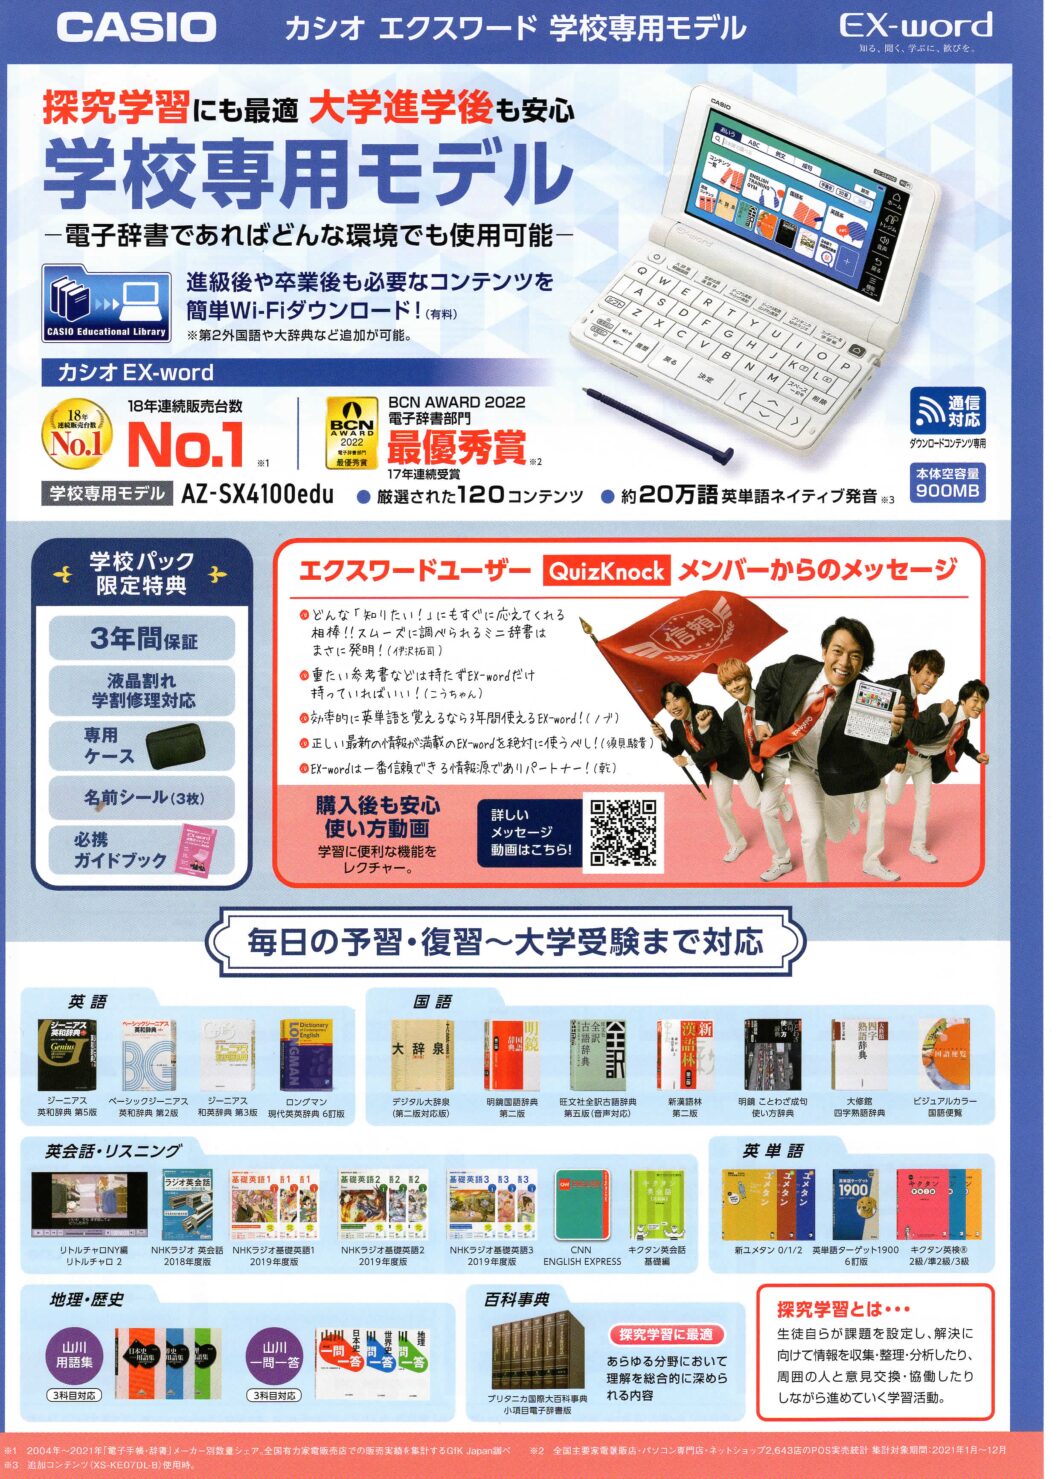 新型スマホOPPO CASIO 電子辞書 XD-SX4100 wifi! 電子ブックリーダー